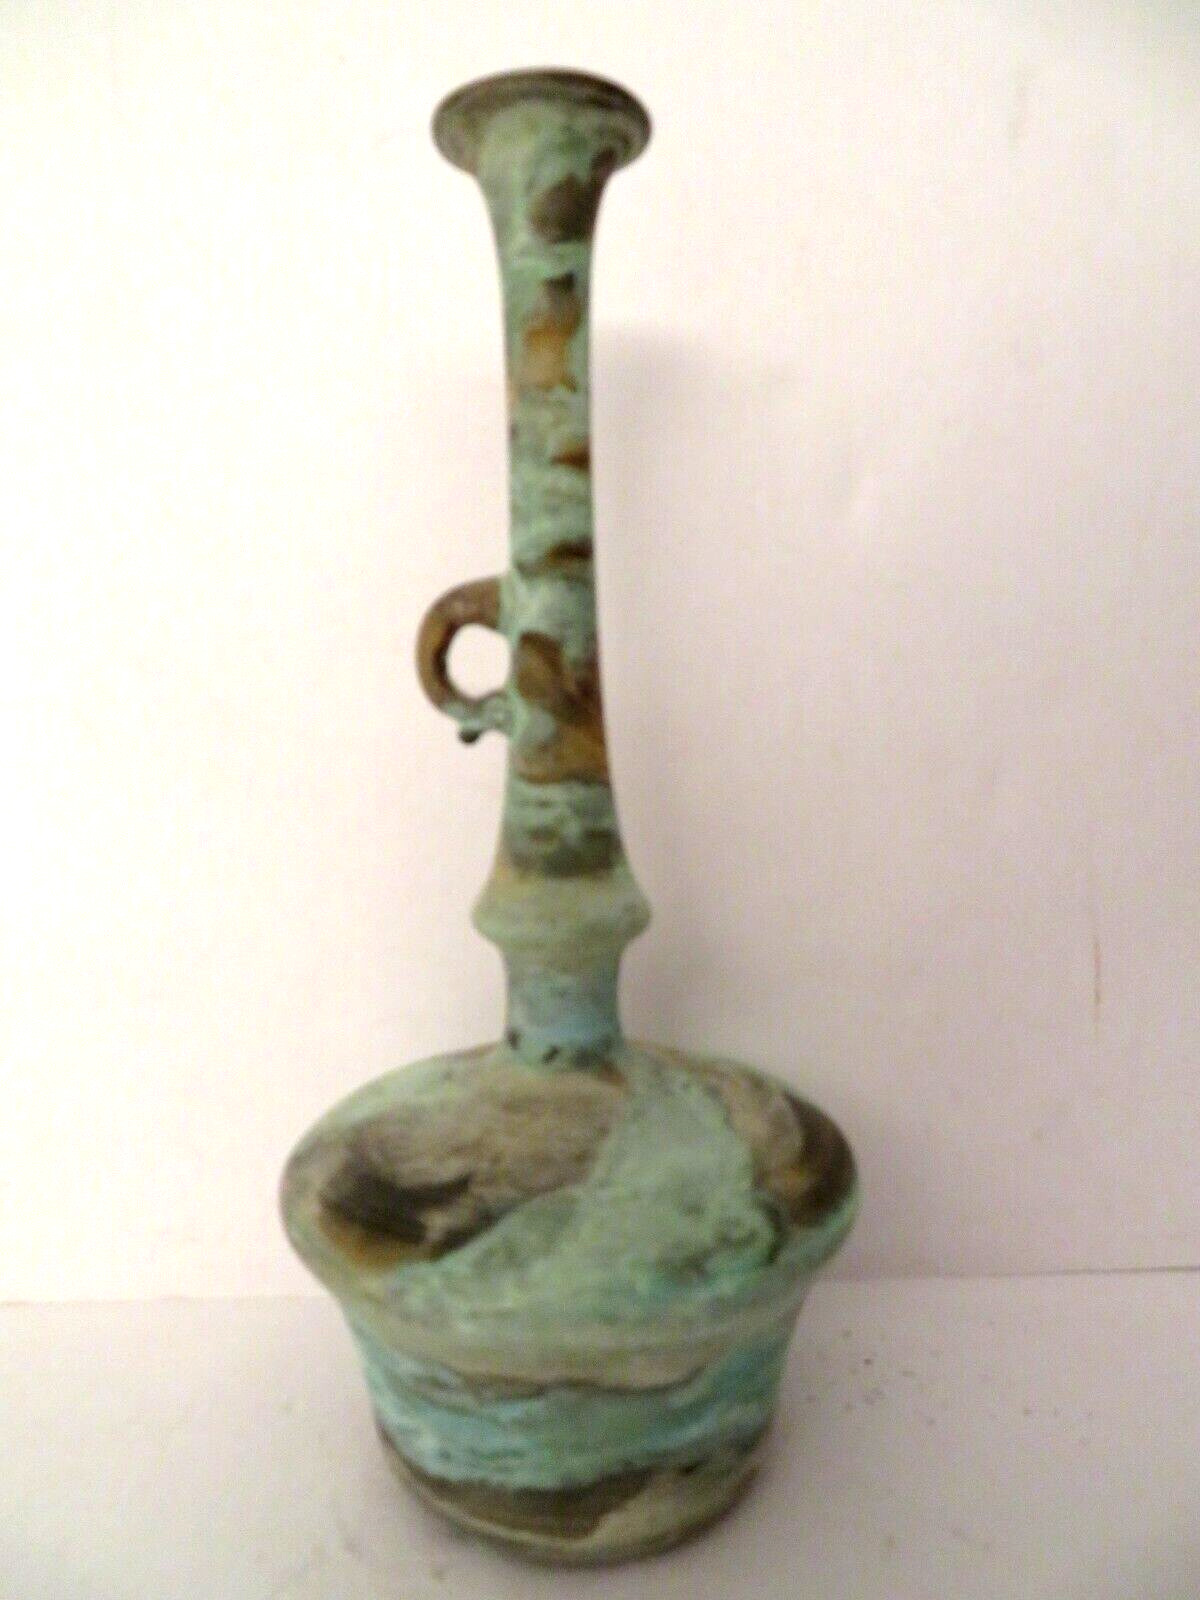 Antique Persian Porcelain Fine Art Vase Vessel Decoration Middle East Mint OOAK